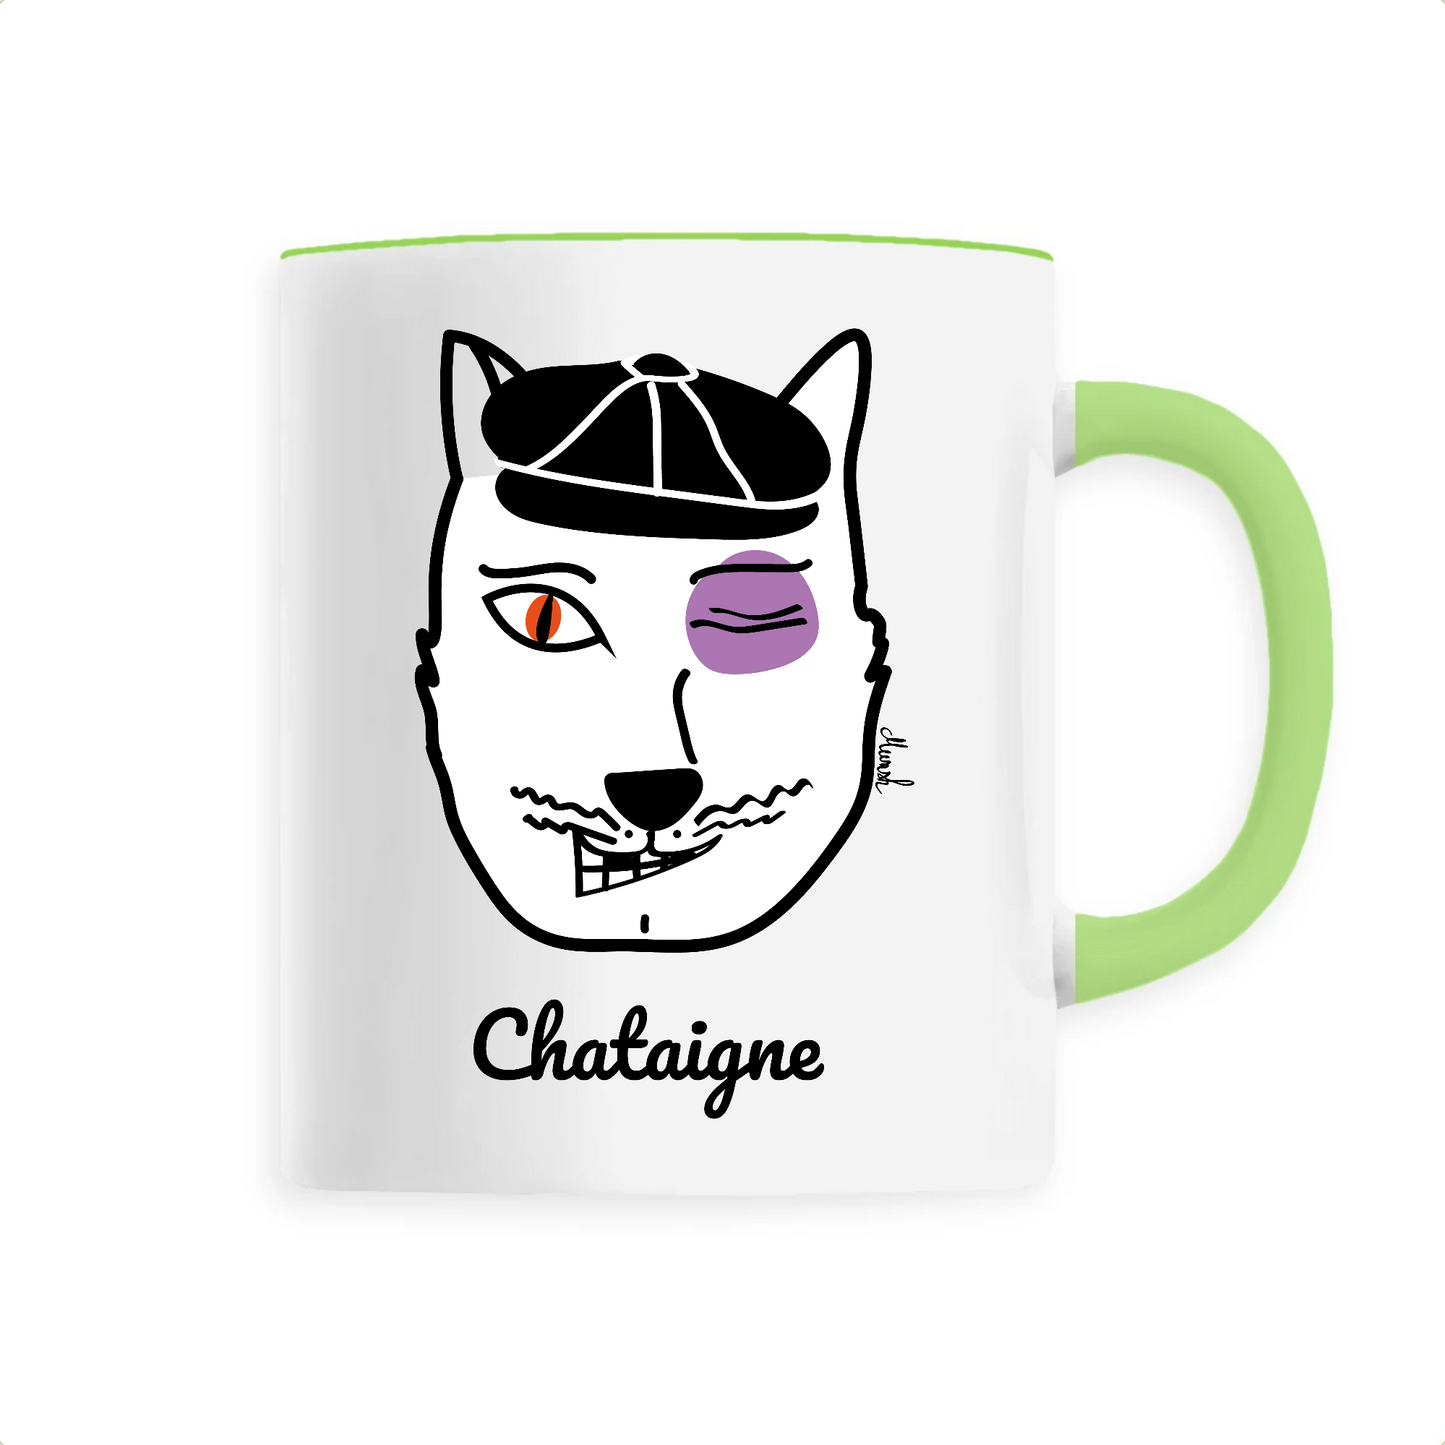 Mug "Chataigne"